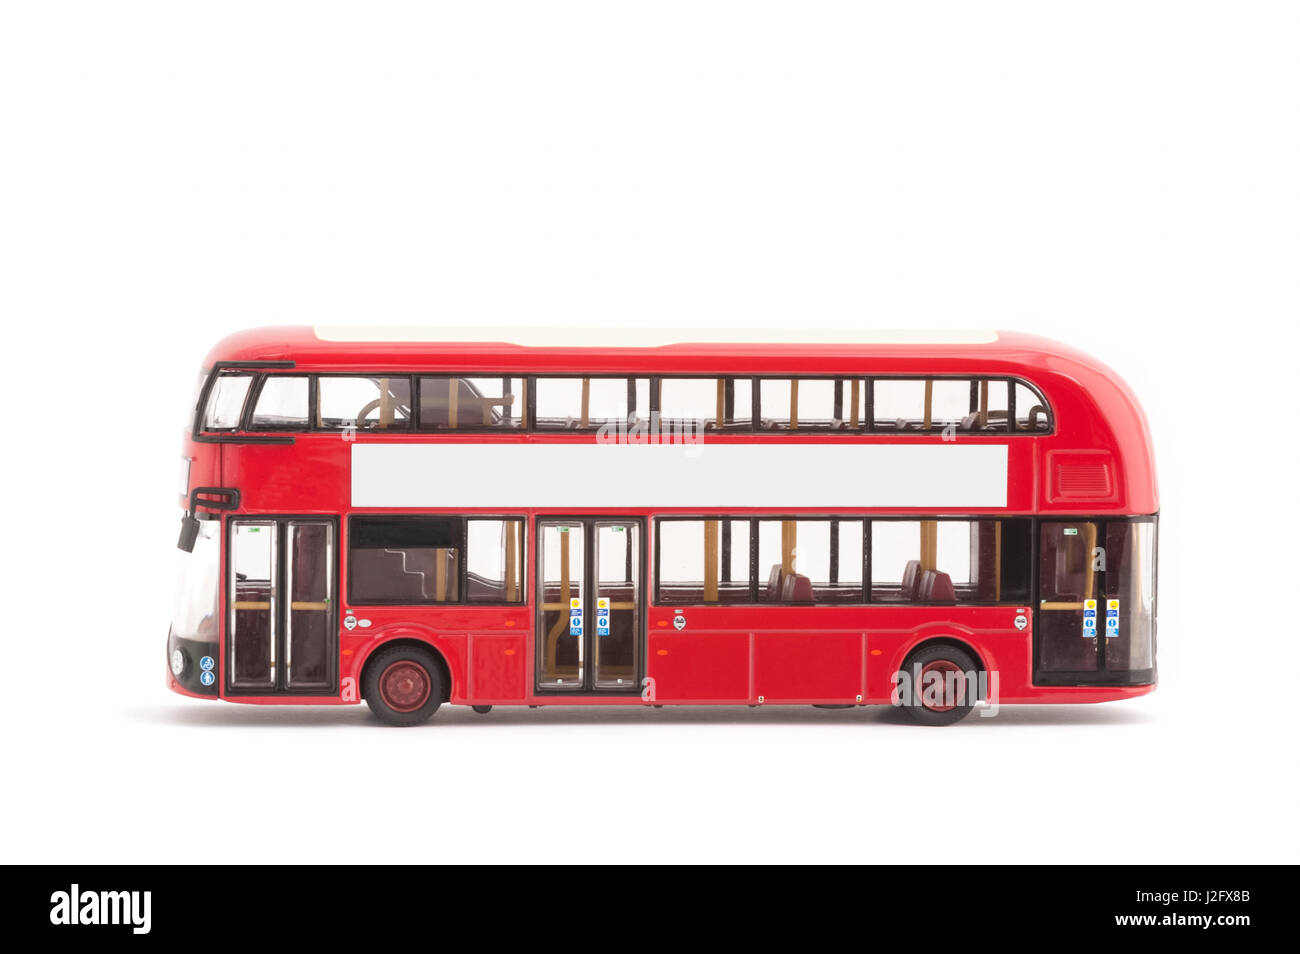 Un modèle miniature de London bus moderne rouge sur fond blanc Banque D'Images